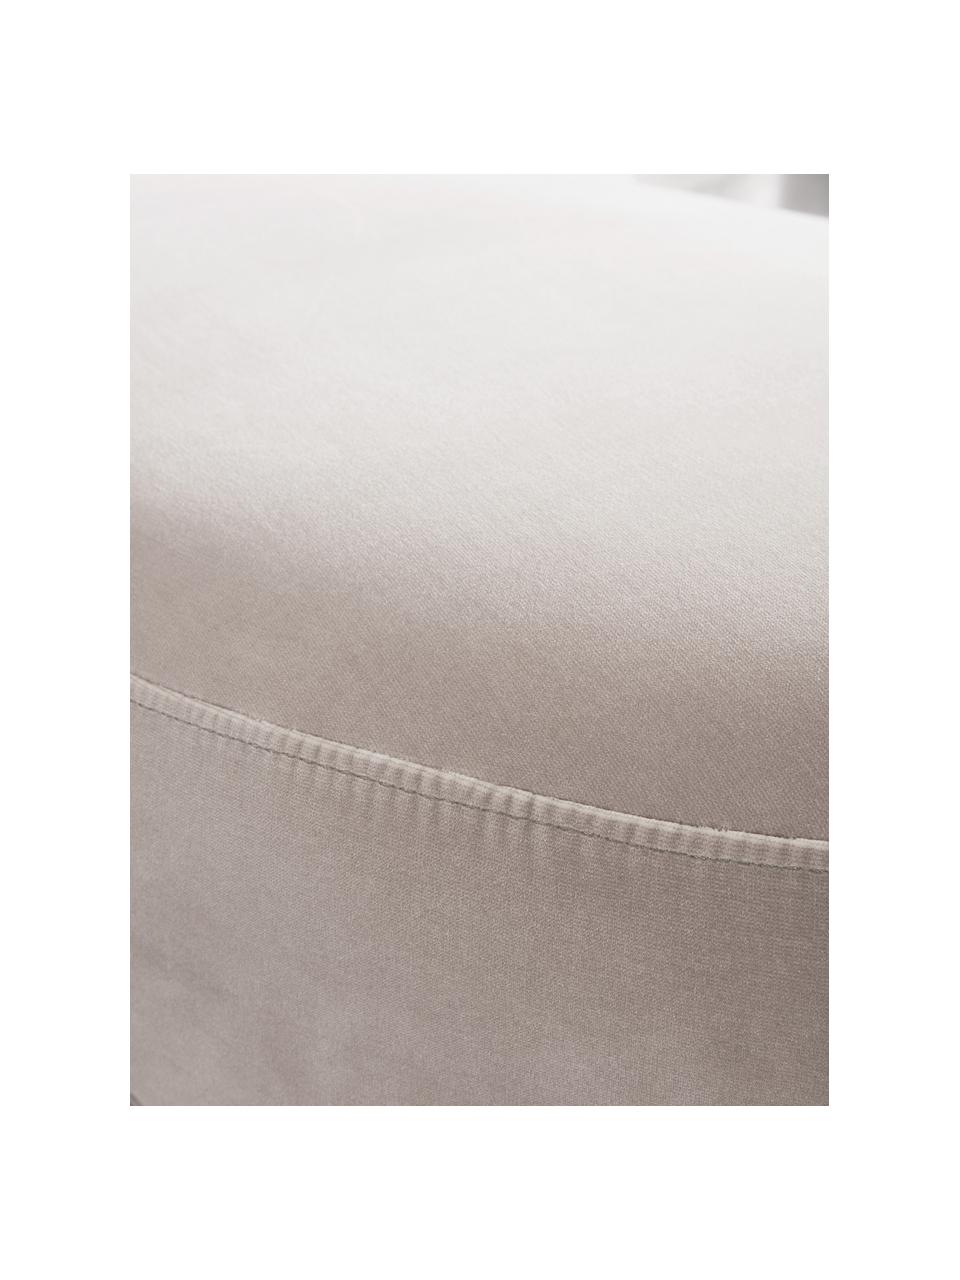 Samt-Sitzbank Coconino in Beige, gepolstert, Bezug: Baumwollsamt (89% Baumwol, Rahmen: Kiefernholz, Beige, 160 x 36 cm